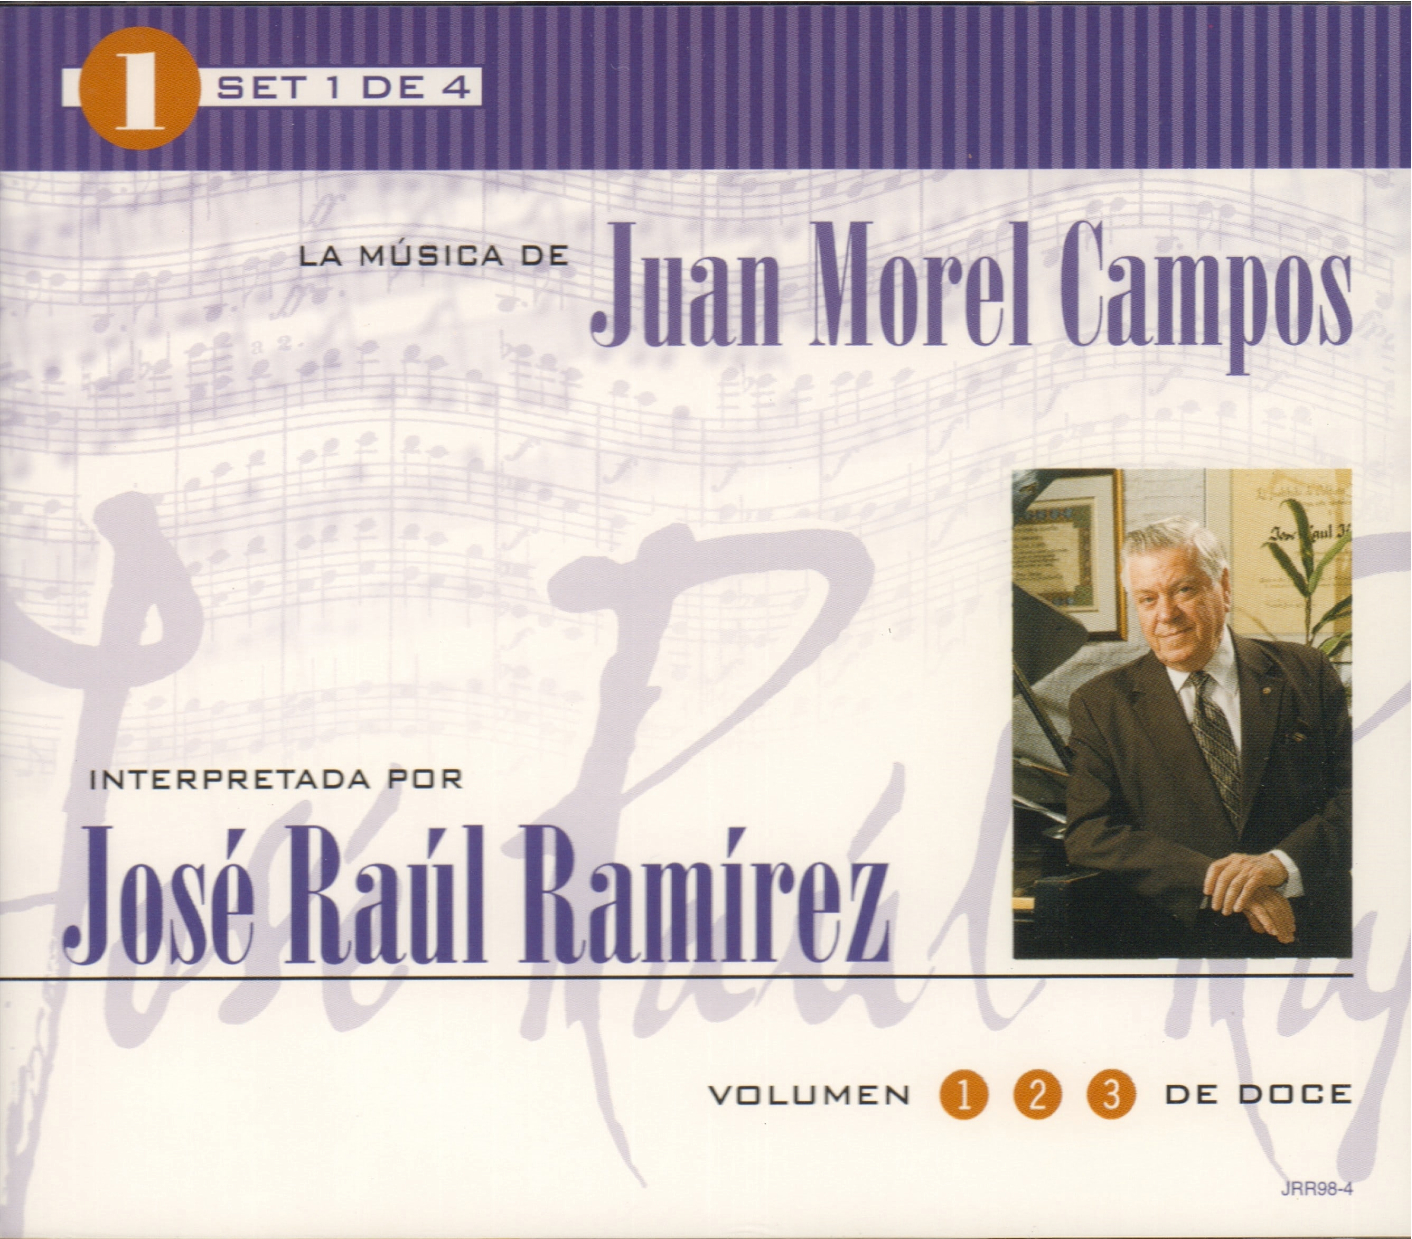 Set 1 de 4: La Música de Juan Morel Campos interpretada por José Raúl Ramírez